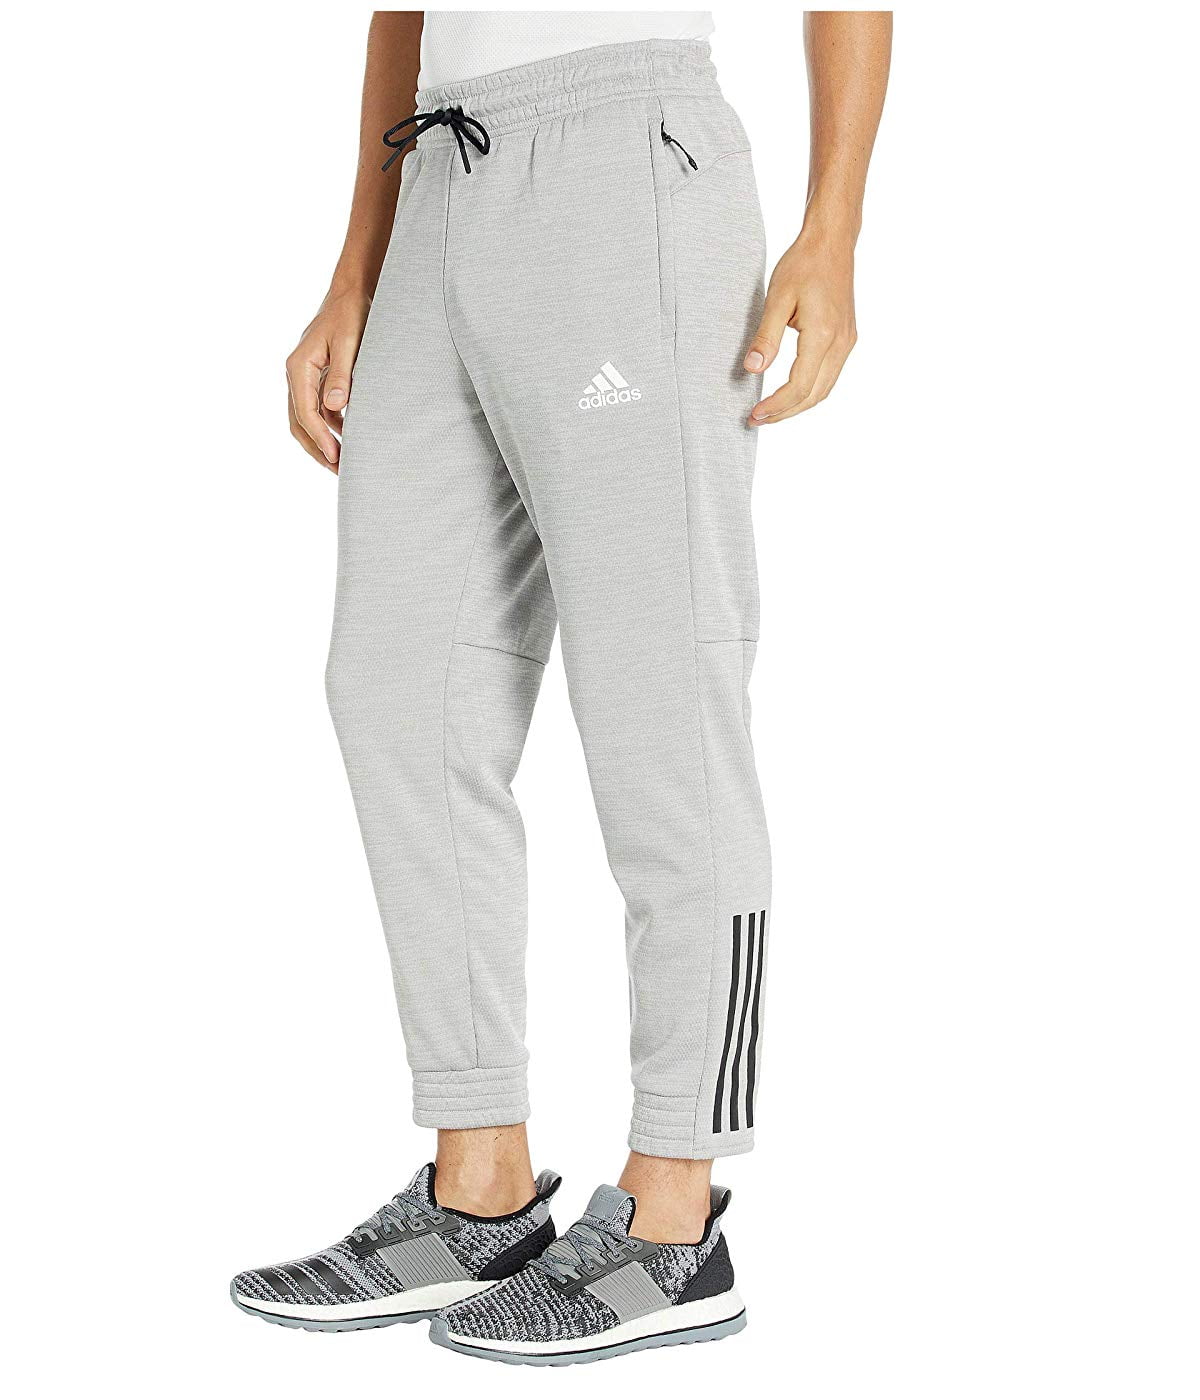 Adidas - adidas Men's Team Issue Jogger Pants - Walmart.com - Walmart.com